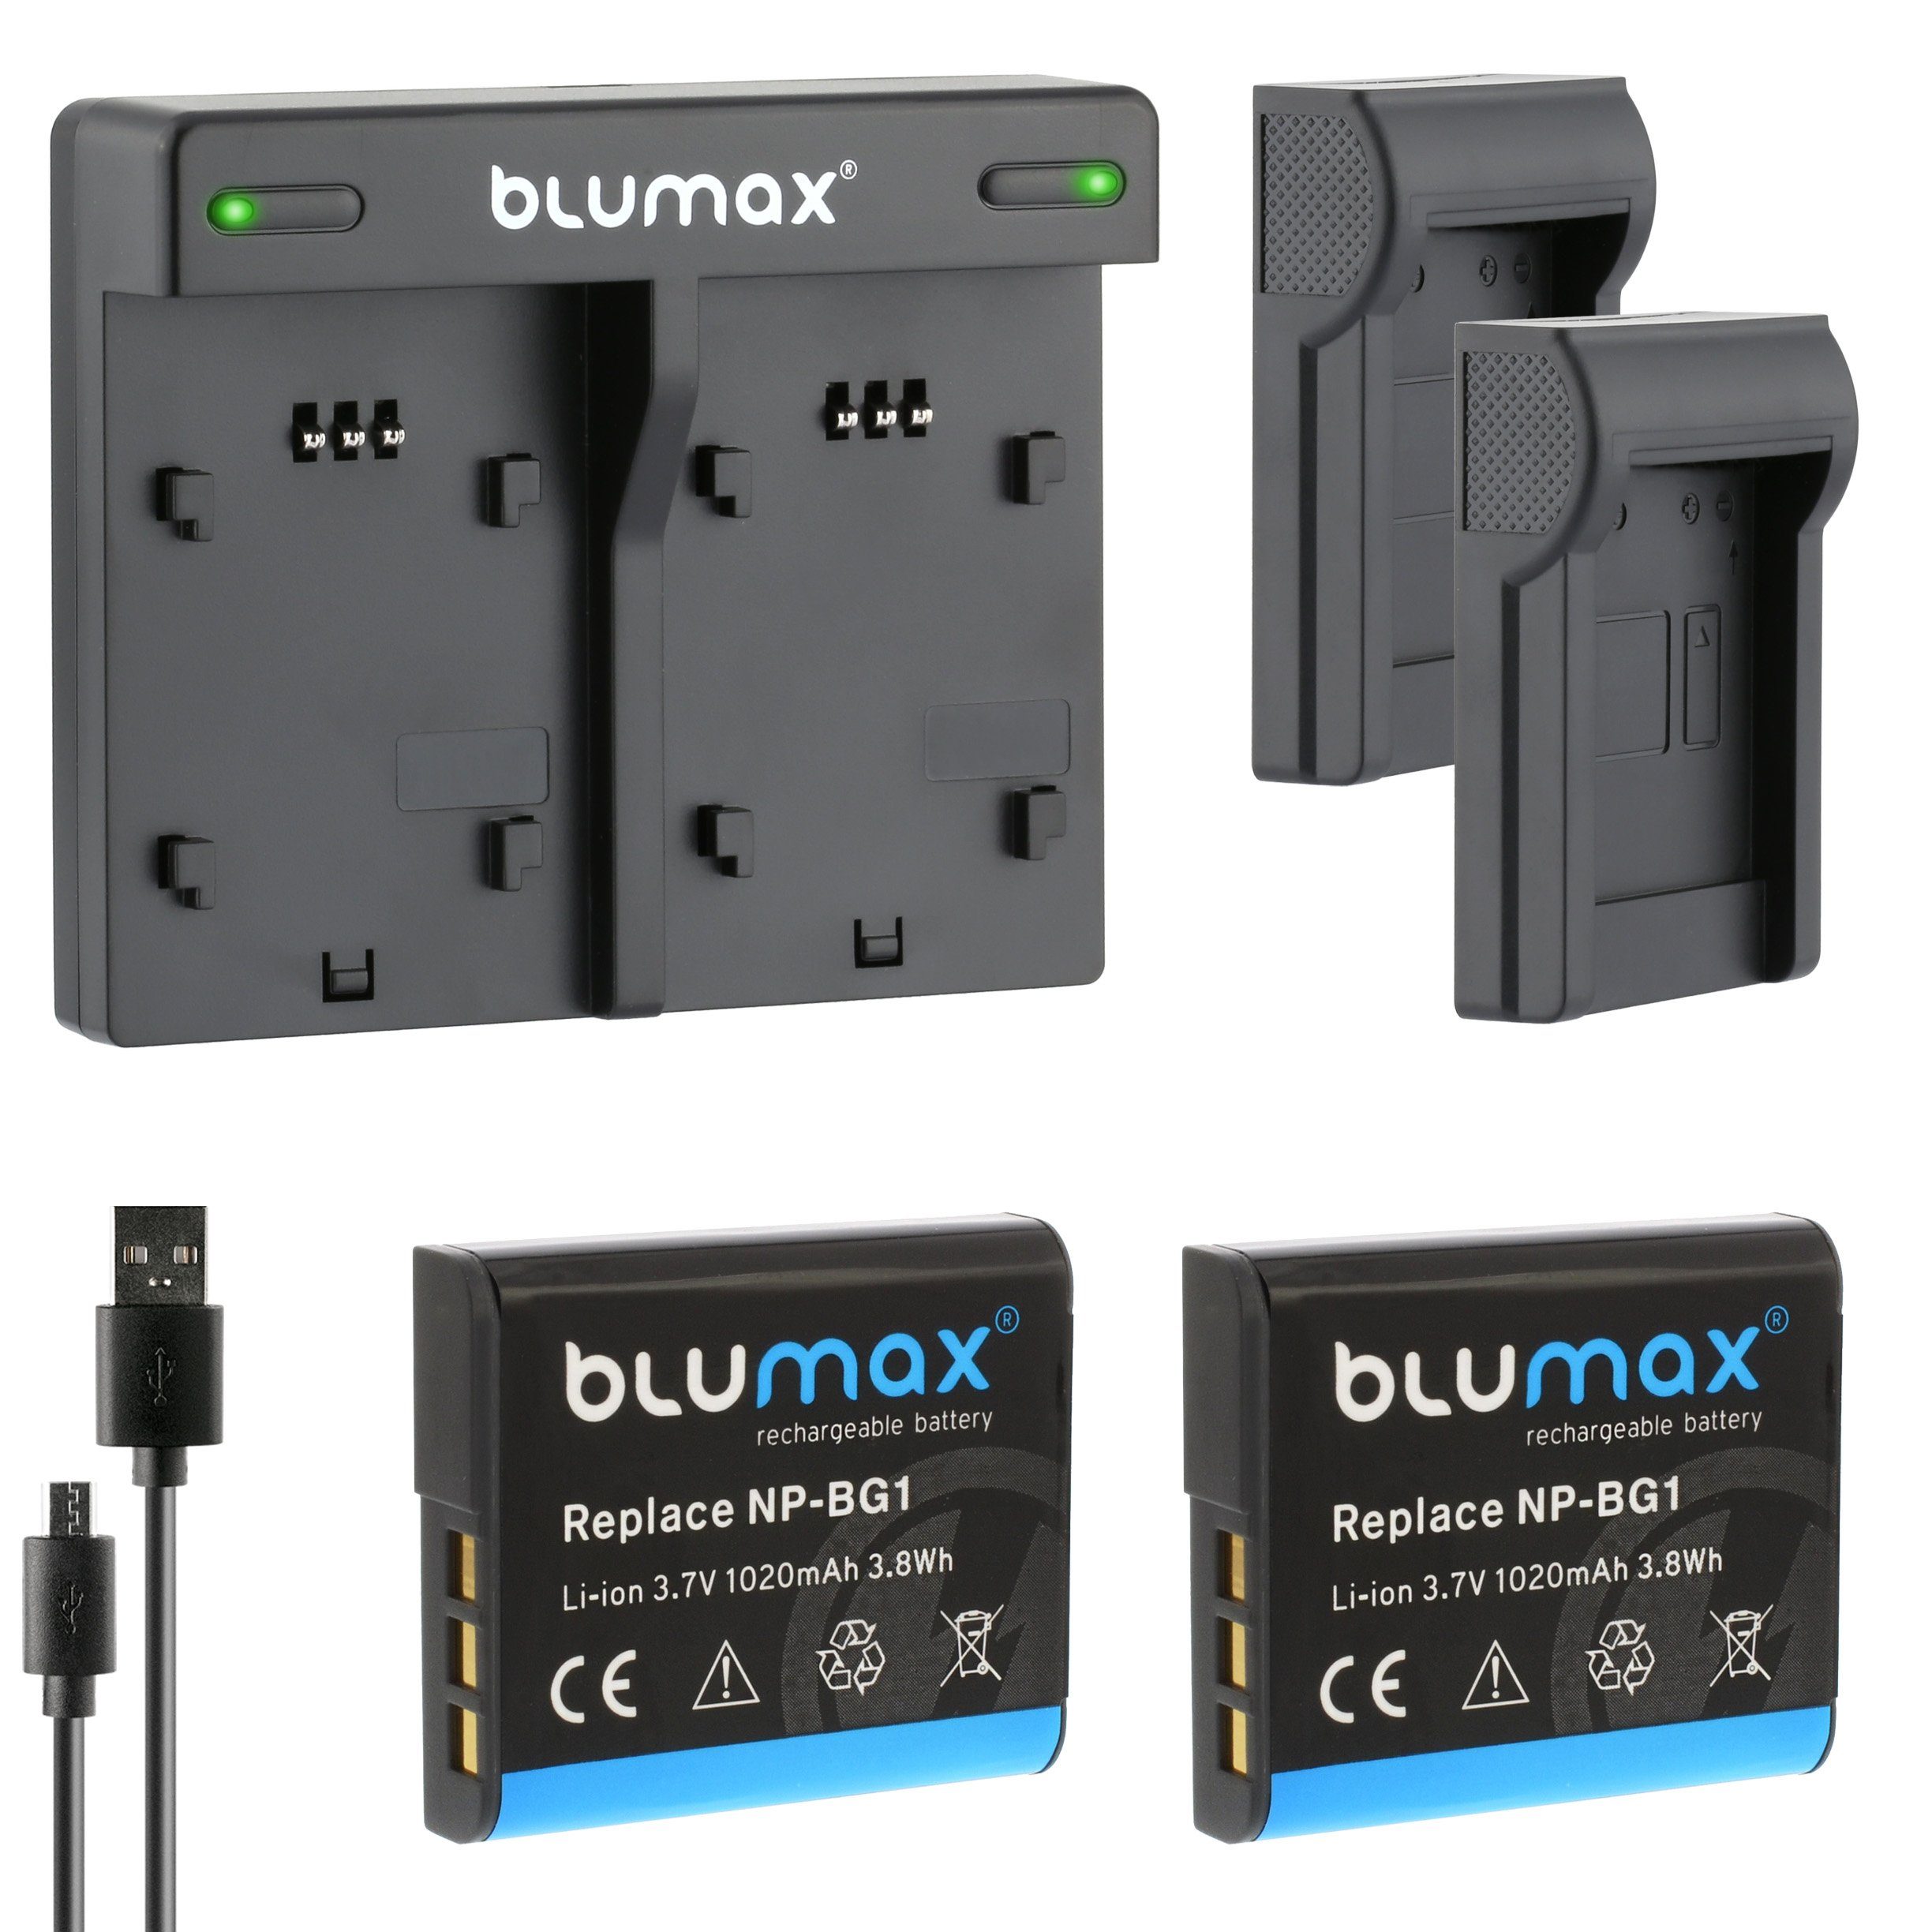 Blumax Set mit Lader für Sony NP-BG1 DSC-W215, 1020mAh Kamera-Akku